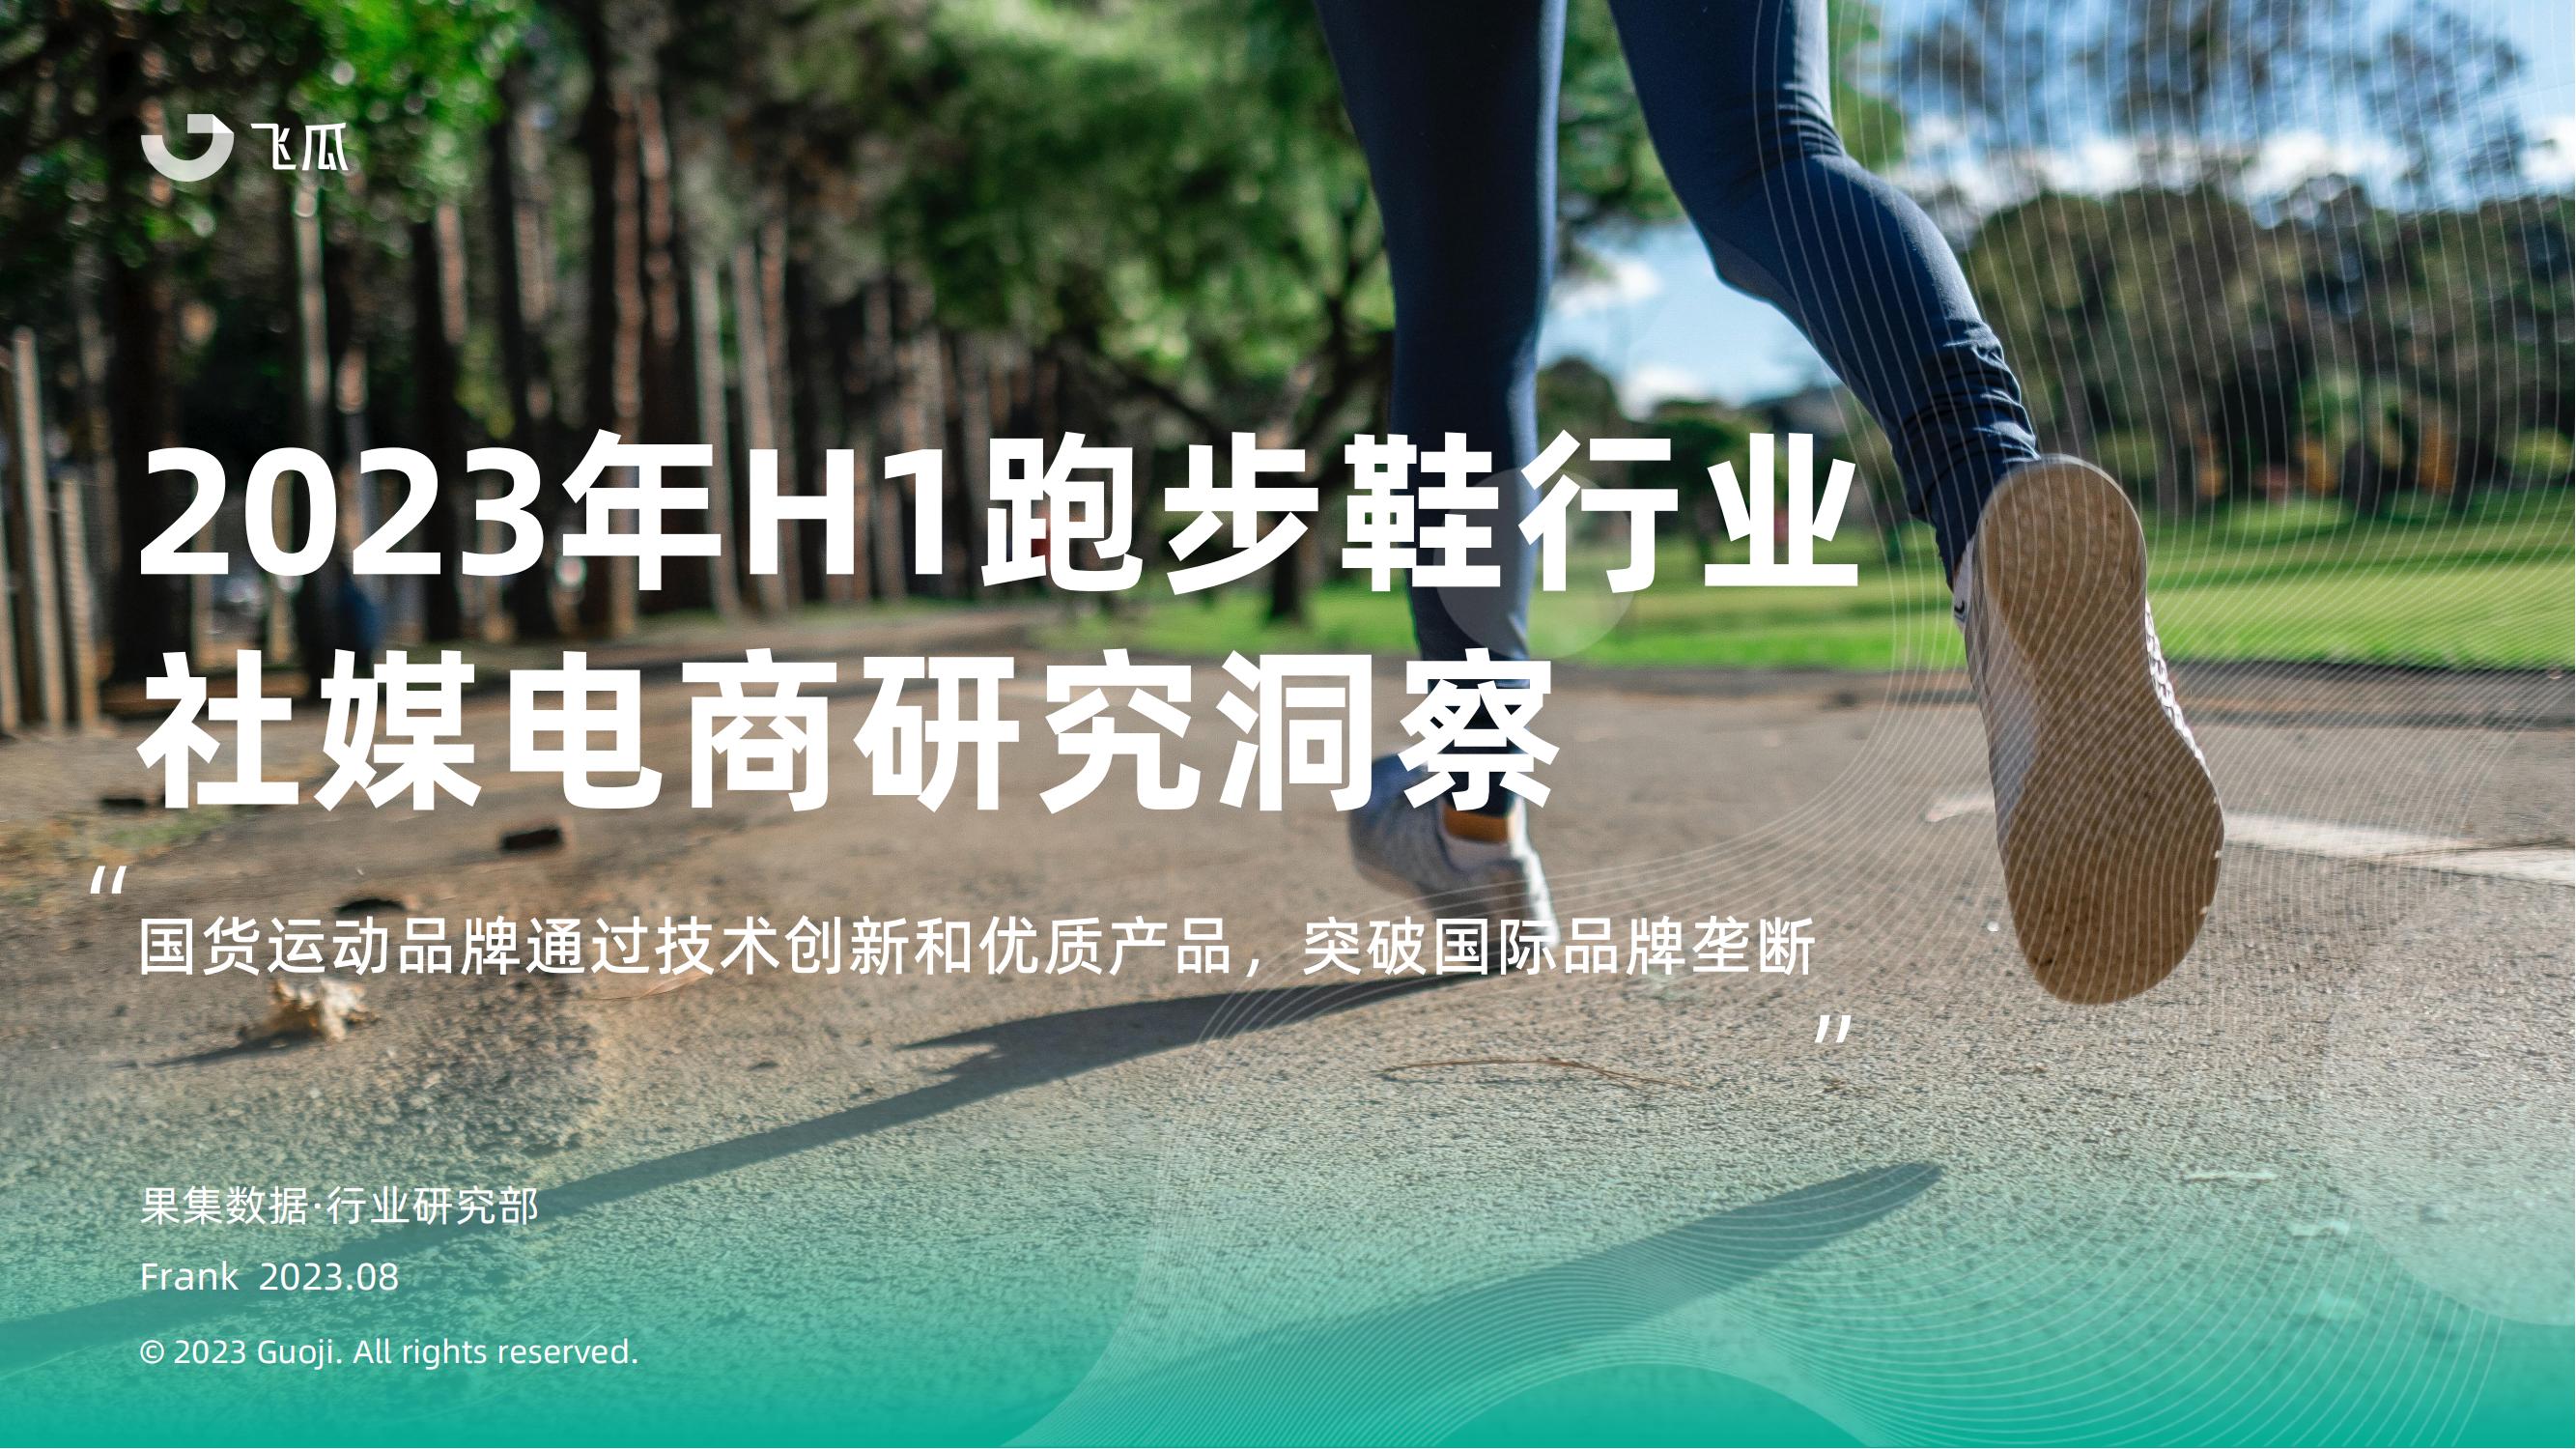 2023年H1跑步鞋行业社媒电商研究洞察